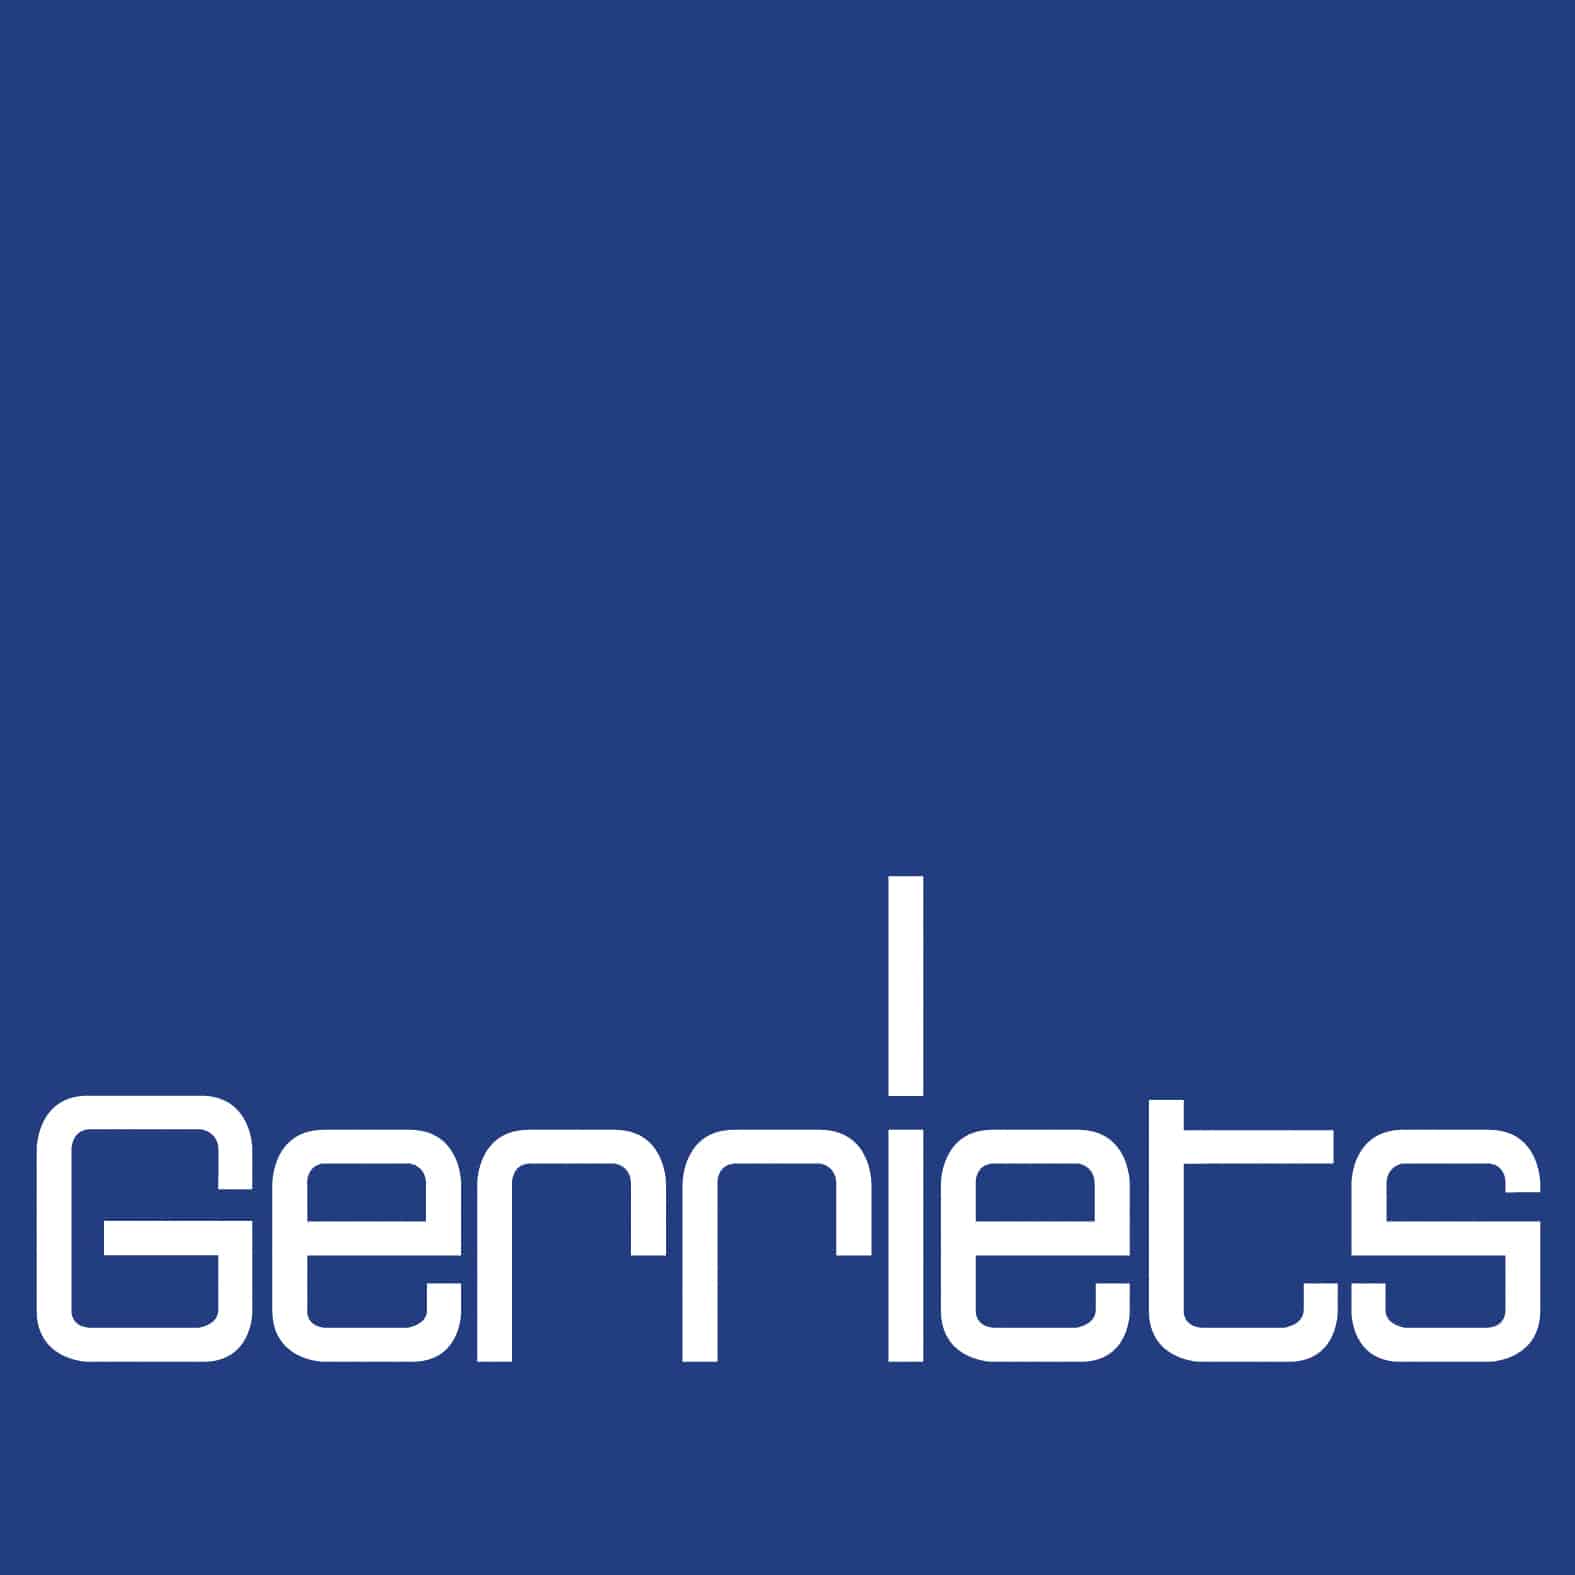 https://ideadance.org/members/wp-content/uploads/2018/03/Gerriets-logo.jpg